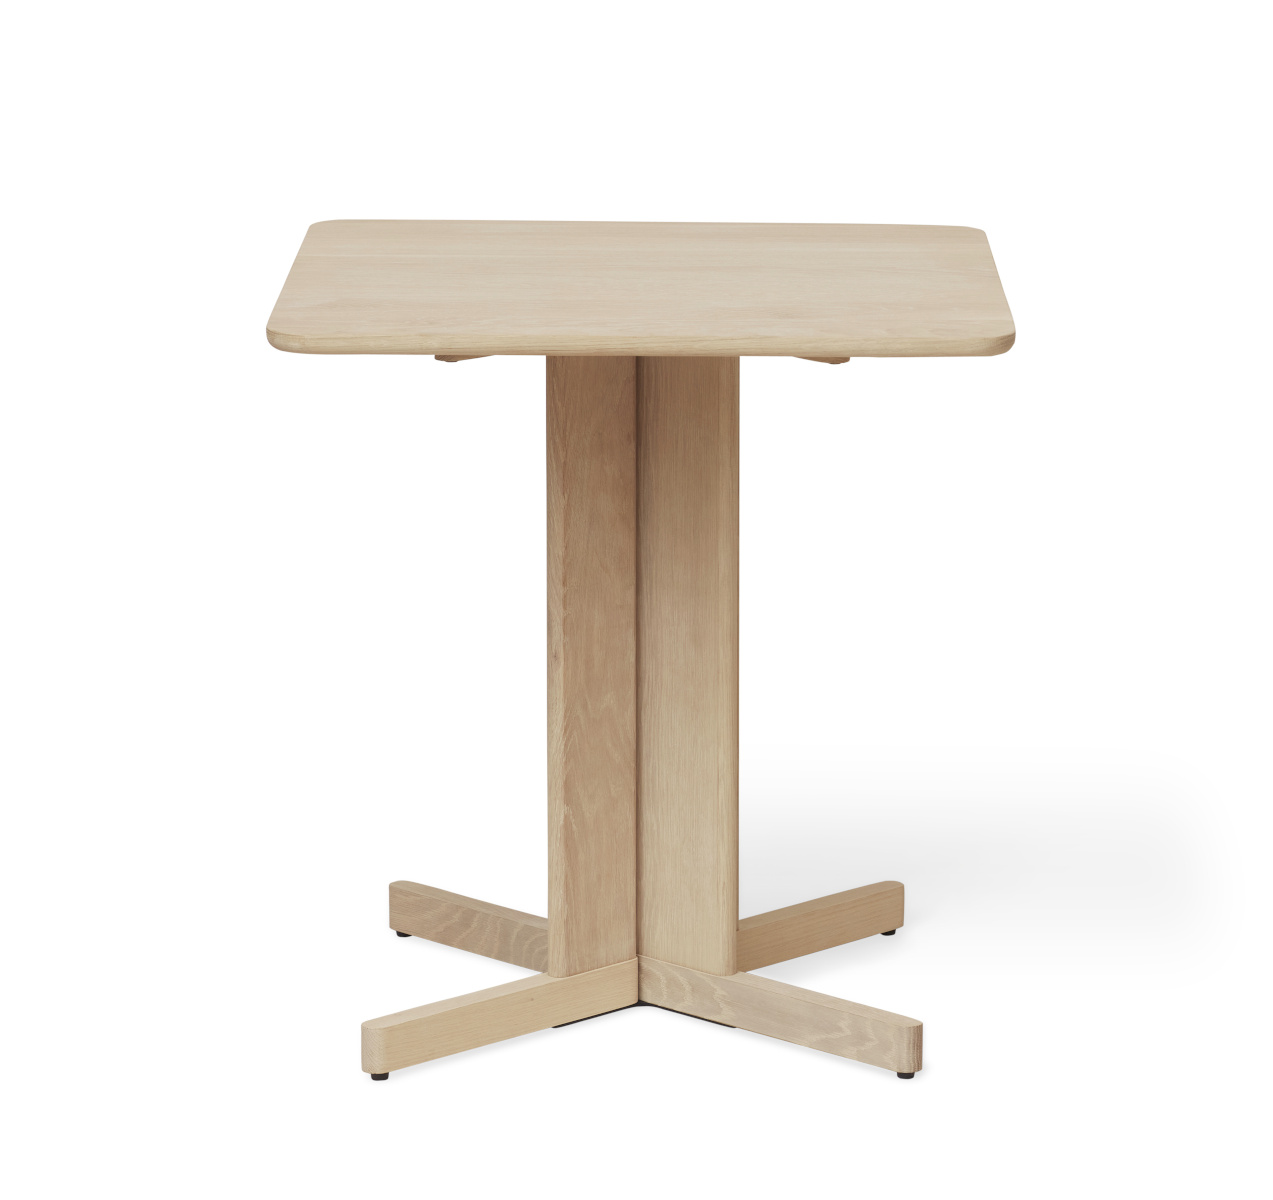 Quatrefoil Tisch, 68 x 68 cm, eiche weiß geölt